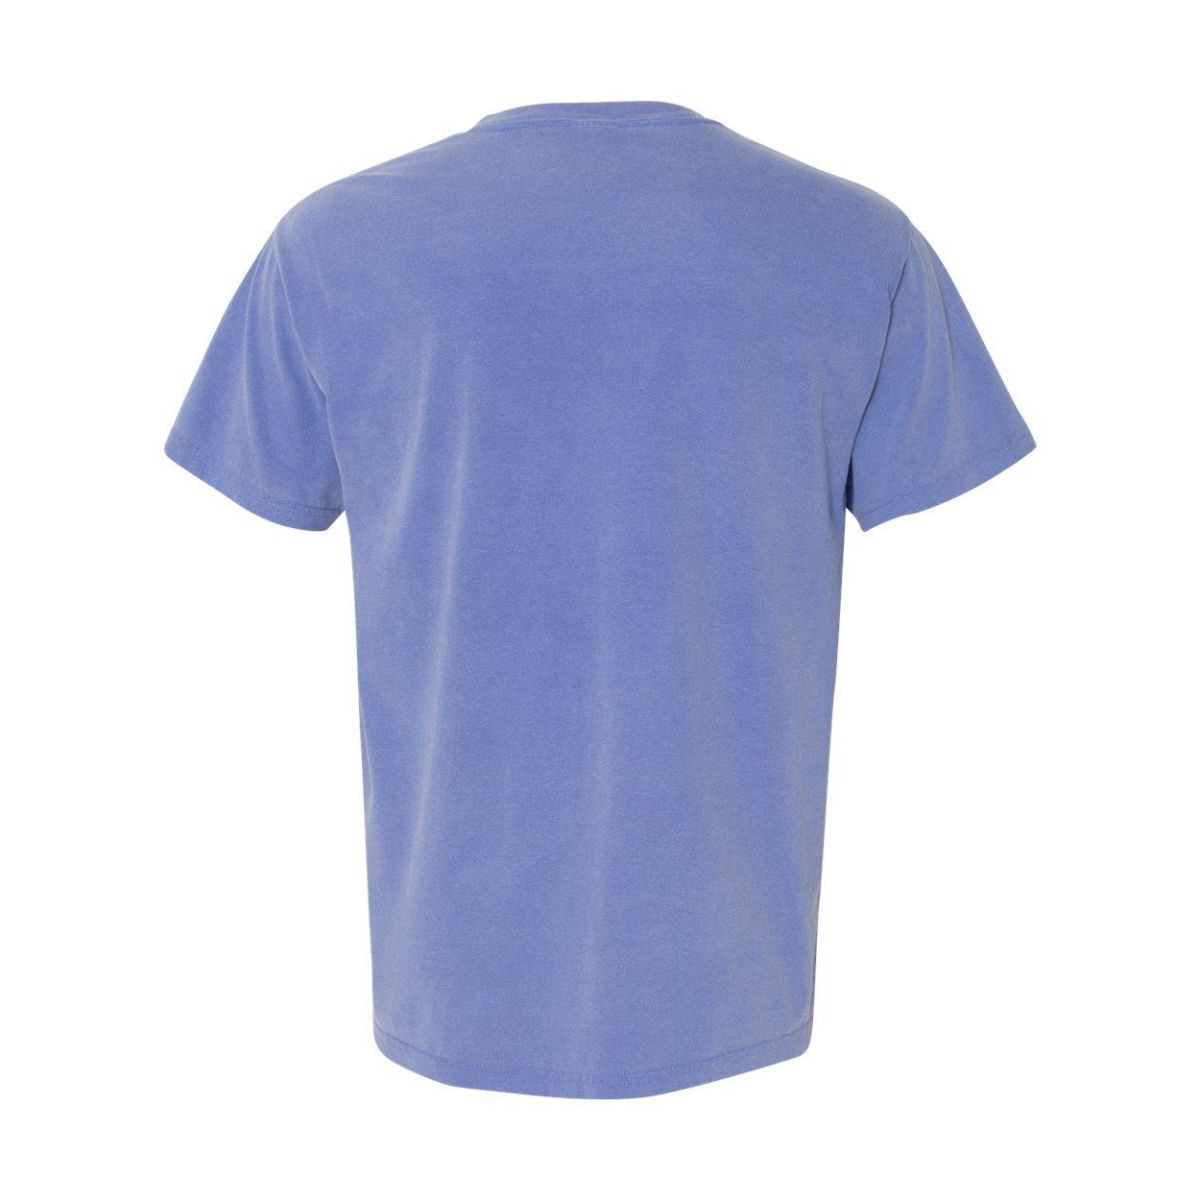 Тяжёлая футболка, окрашенная в готовом виде Comfort Colors термостакан gems blue topaz синий топаз